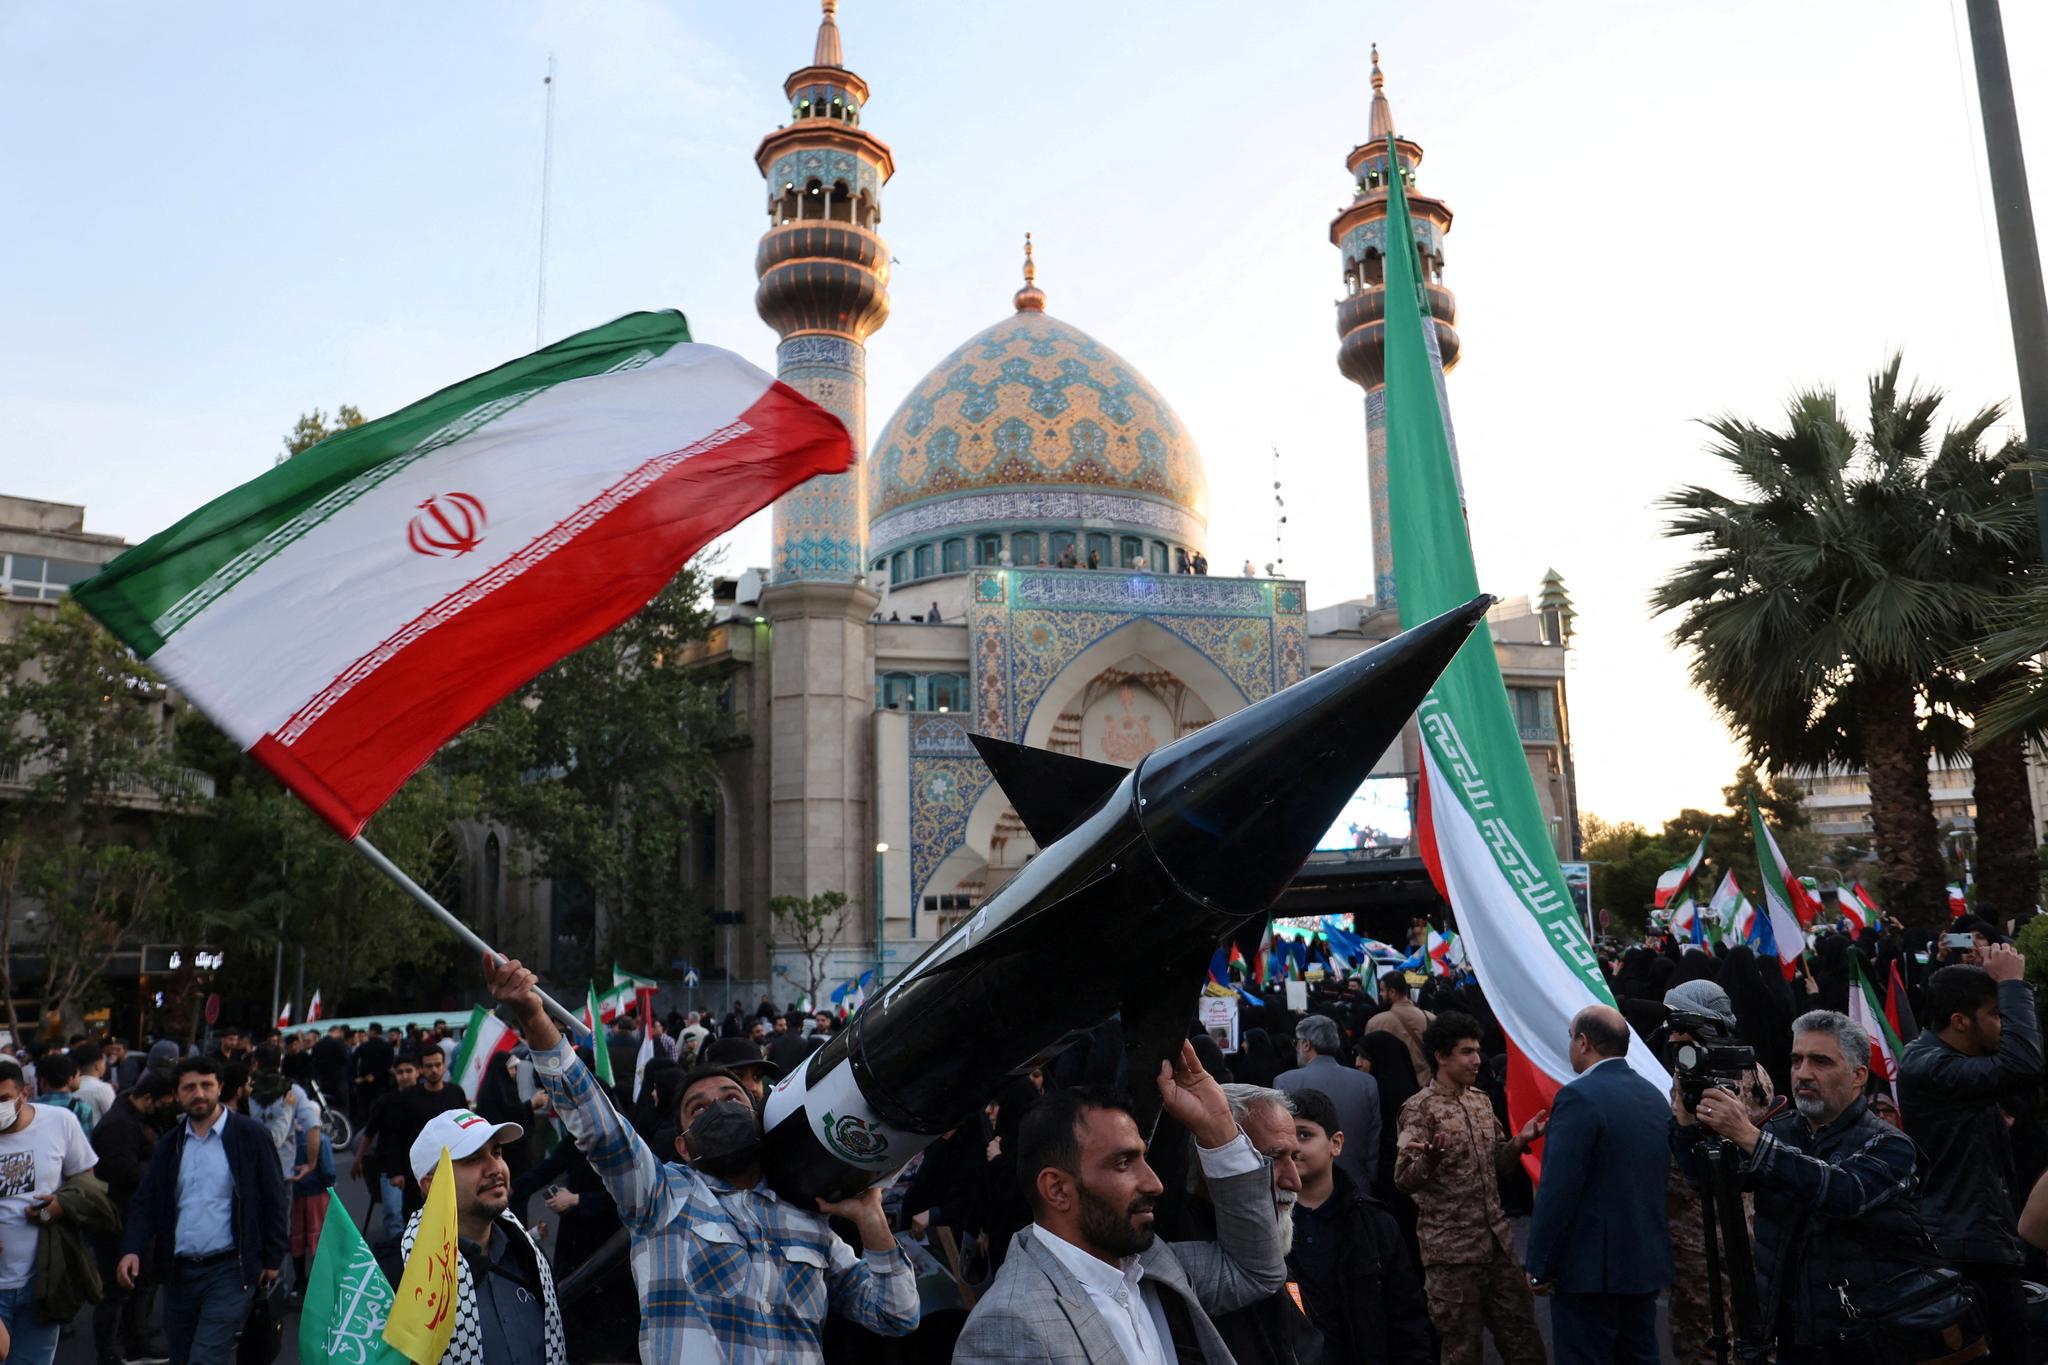 Iranere i Teheran feirer angrepet på Israel.